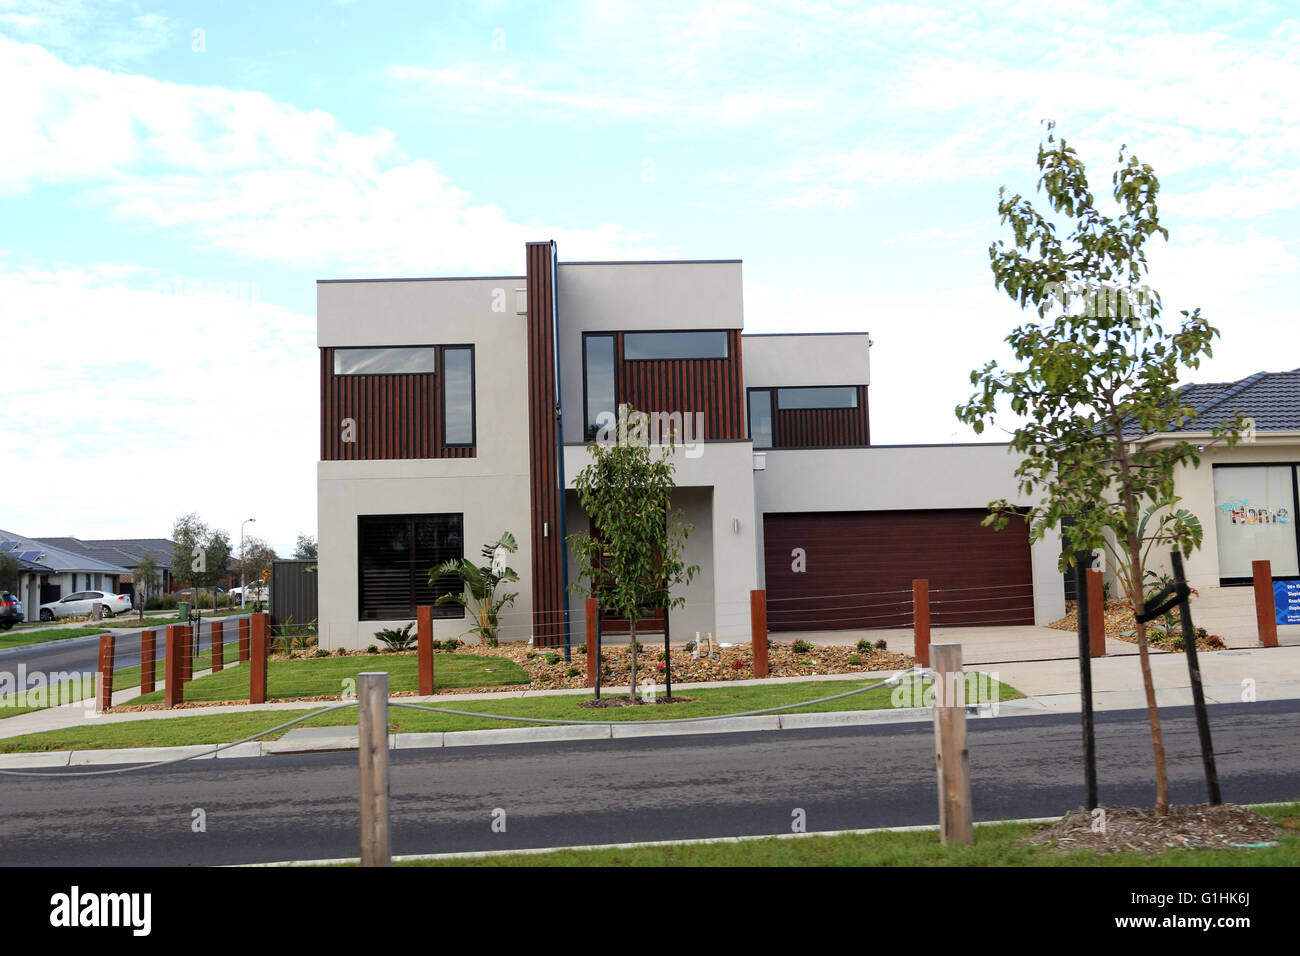 Australische anzeigen modernen zweistöckigen neuen Hause in Melbourne Australien Stockfoto